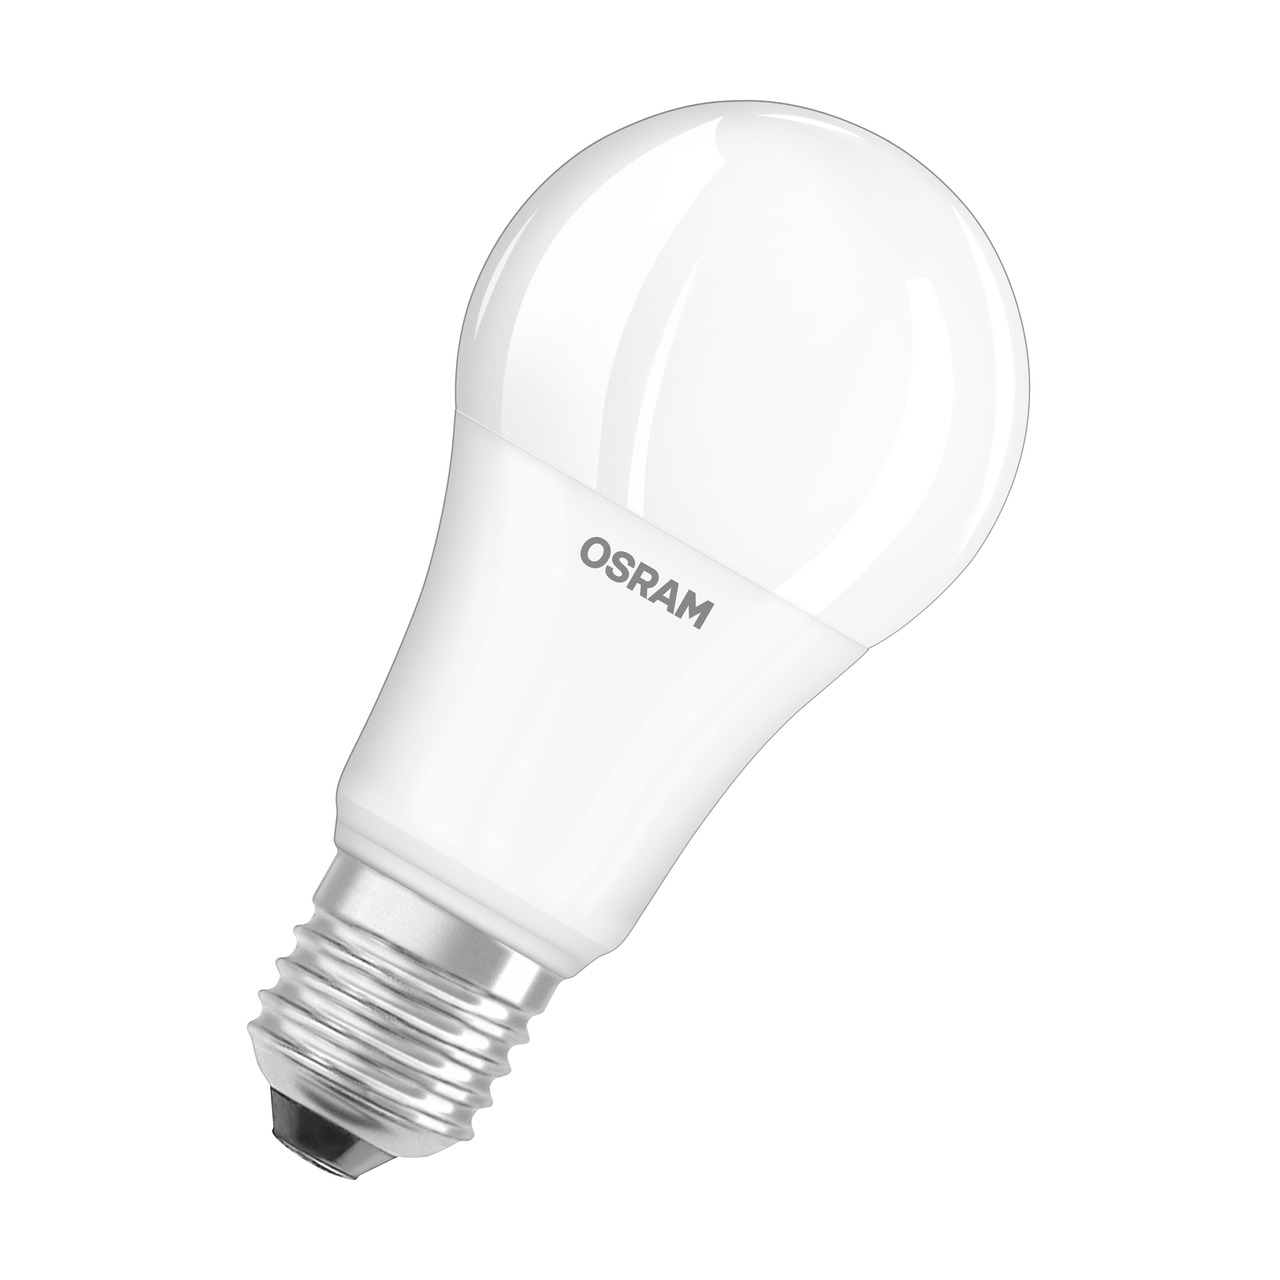 OSRAM 13-W-LED-Lampe A60- E27- 1521 lm- kaltweiss- matt